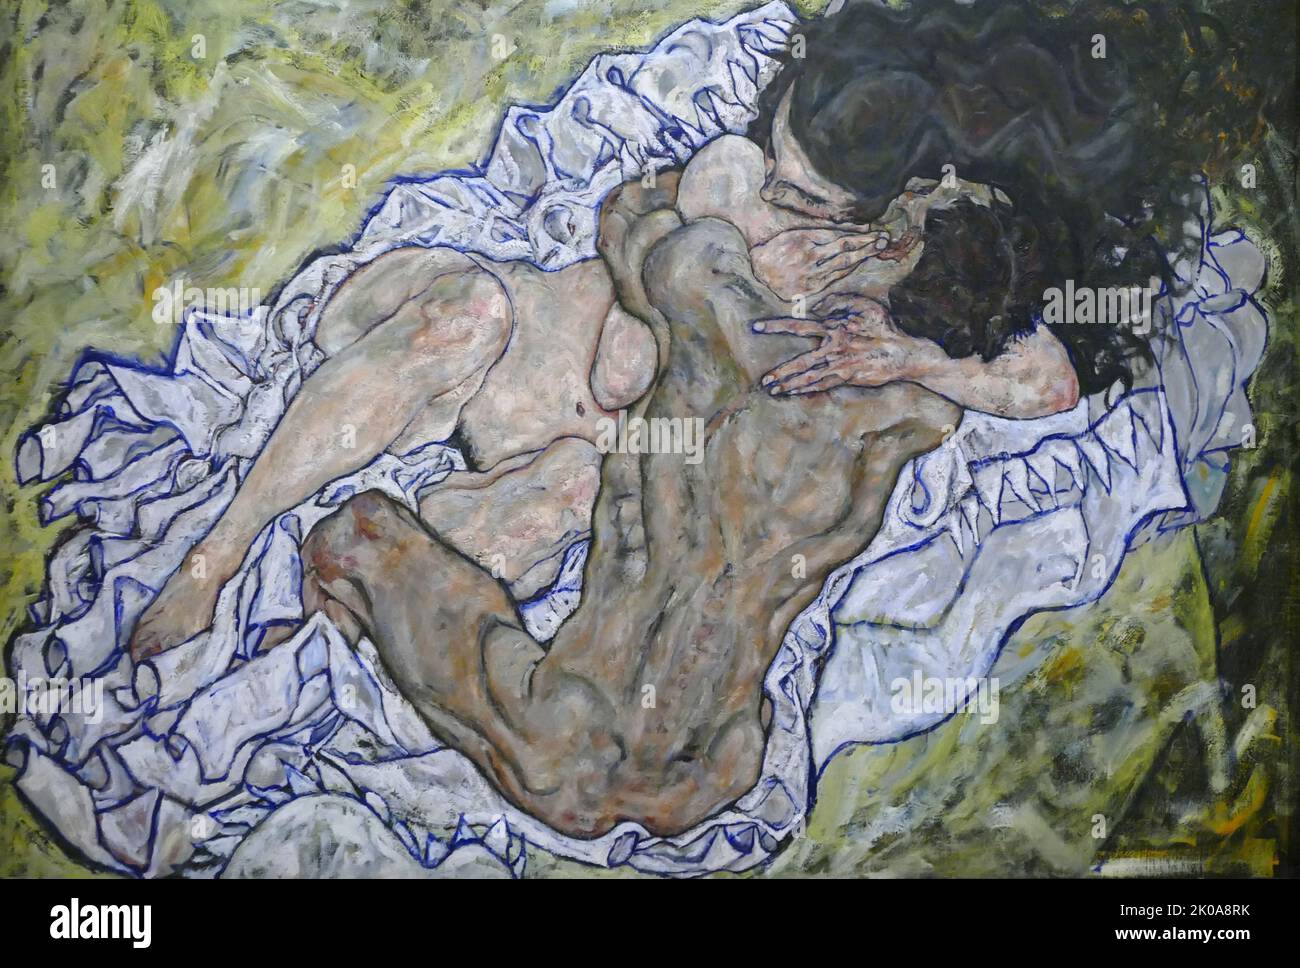 Die Umarmung, 1917. Öl auf Leinwand von Egon Schiele. Egon Leo Adolf Ludwig Schiele (12. Juni 1890 - 31. Oktober 1918) war ein österreichischer expressionistischer Maler. Schiele, ein Protege von Gustav Klimt, war ein bedeutender figurativer Maler des frühen 20.. Jahrhunderts. Stockfoto